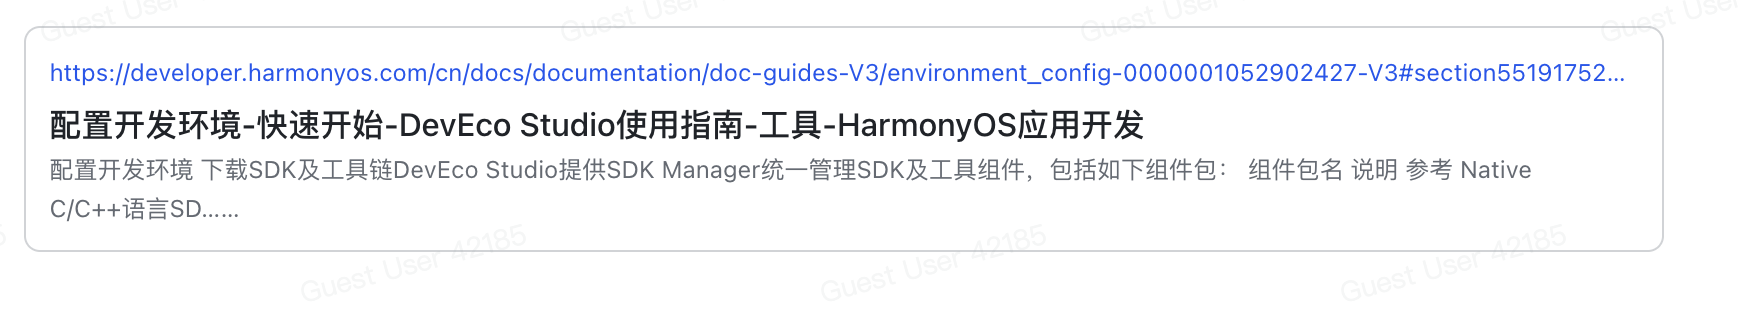 https://developer.harmonyos.com/cn/docs/documentation/doc-guides-V3/environment_config-0000001052902427-V3#section551917522319